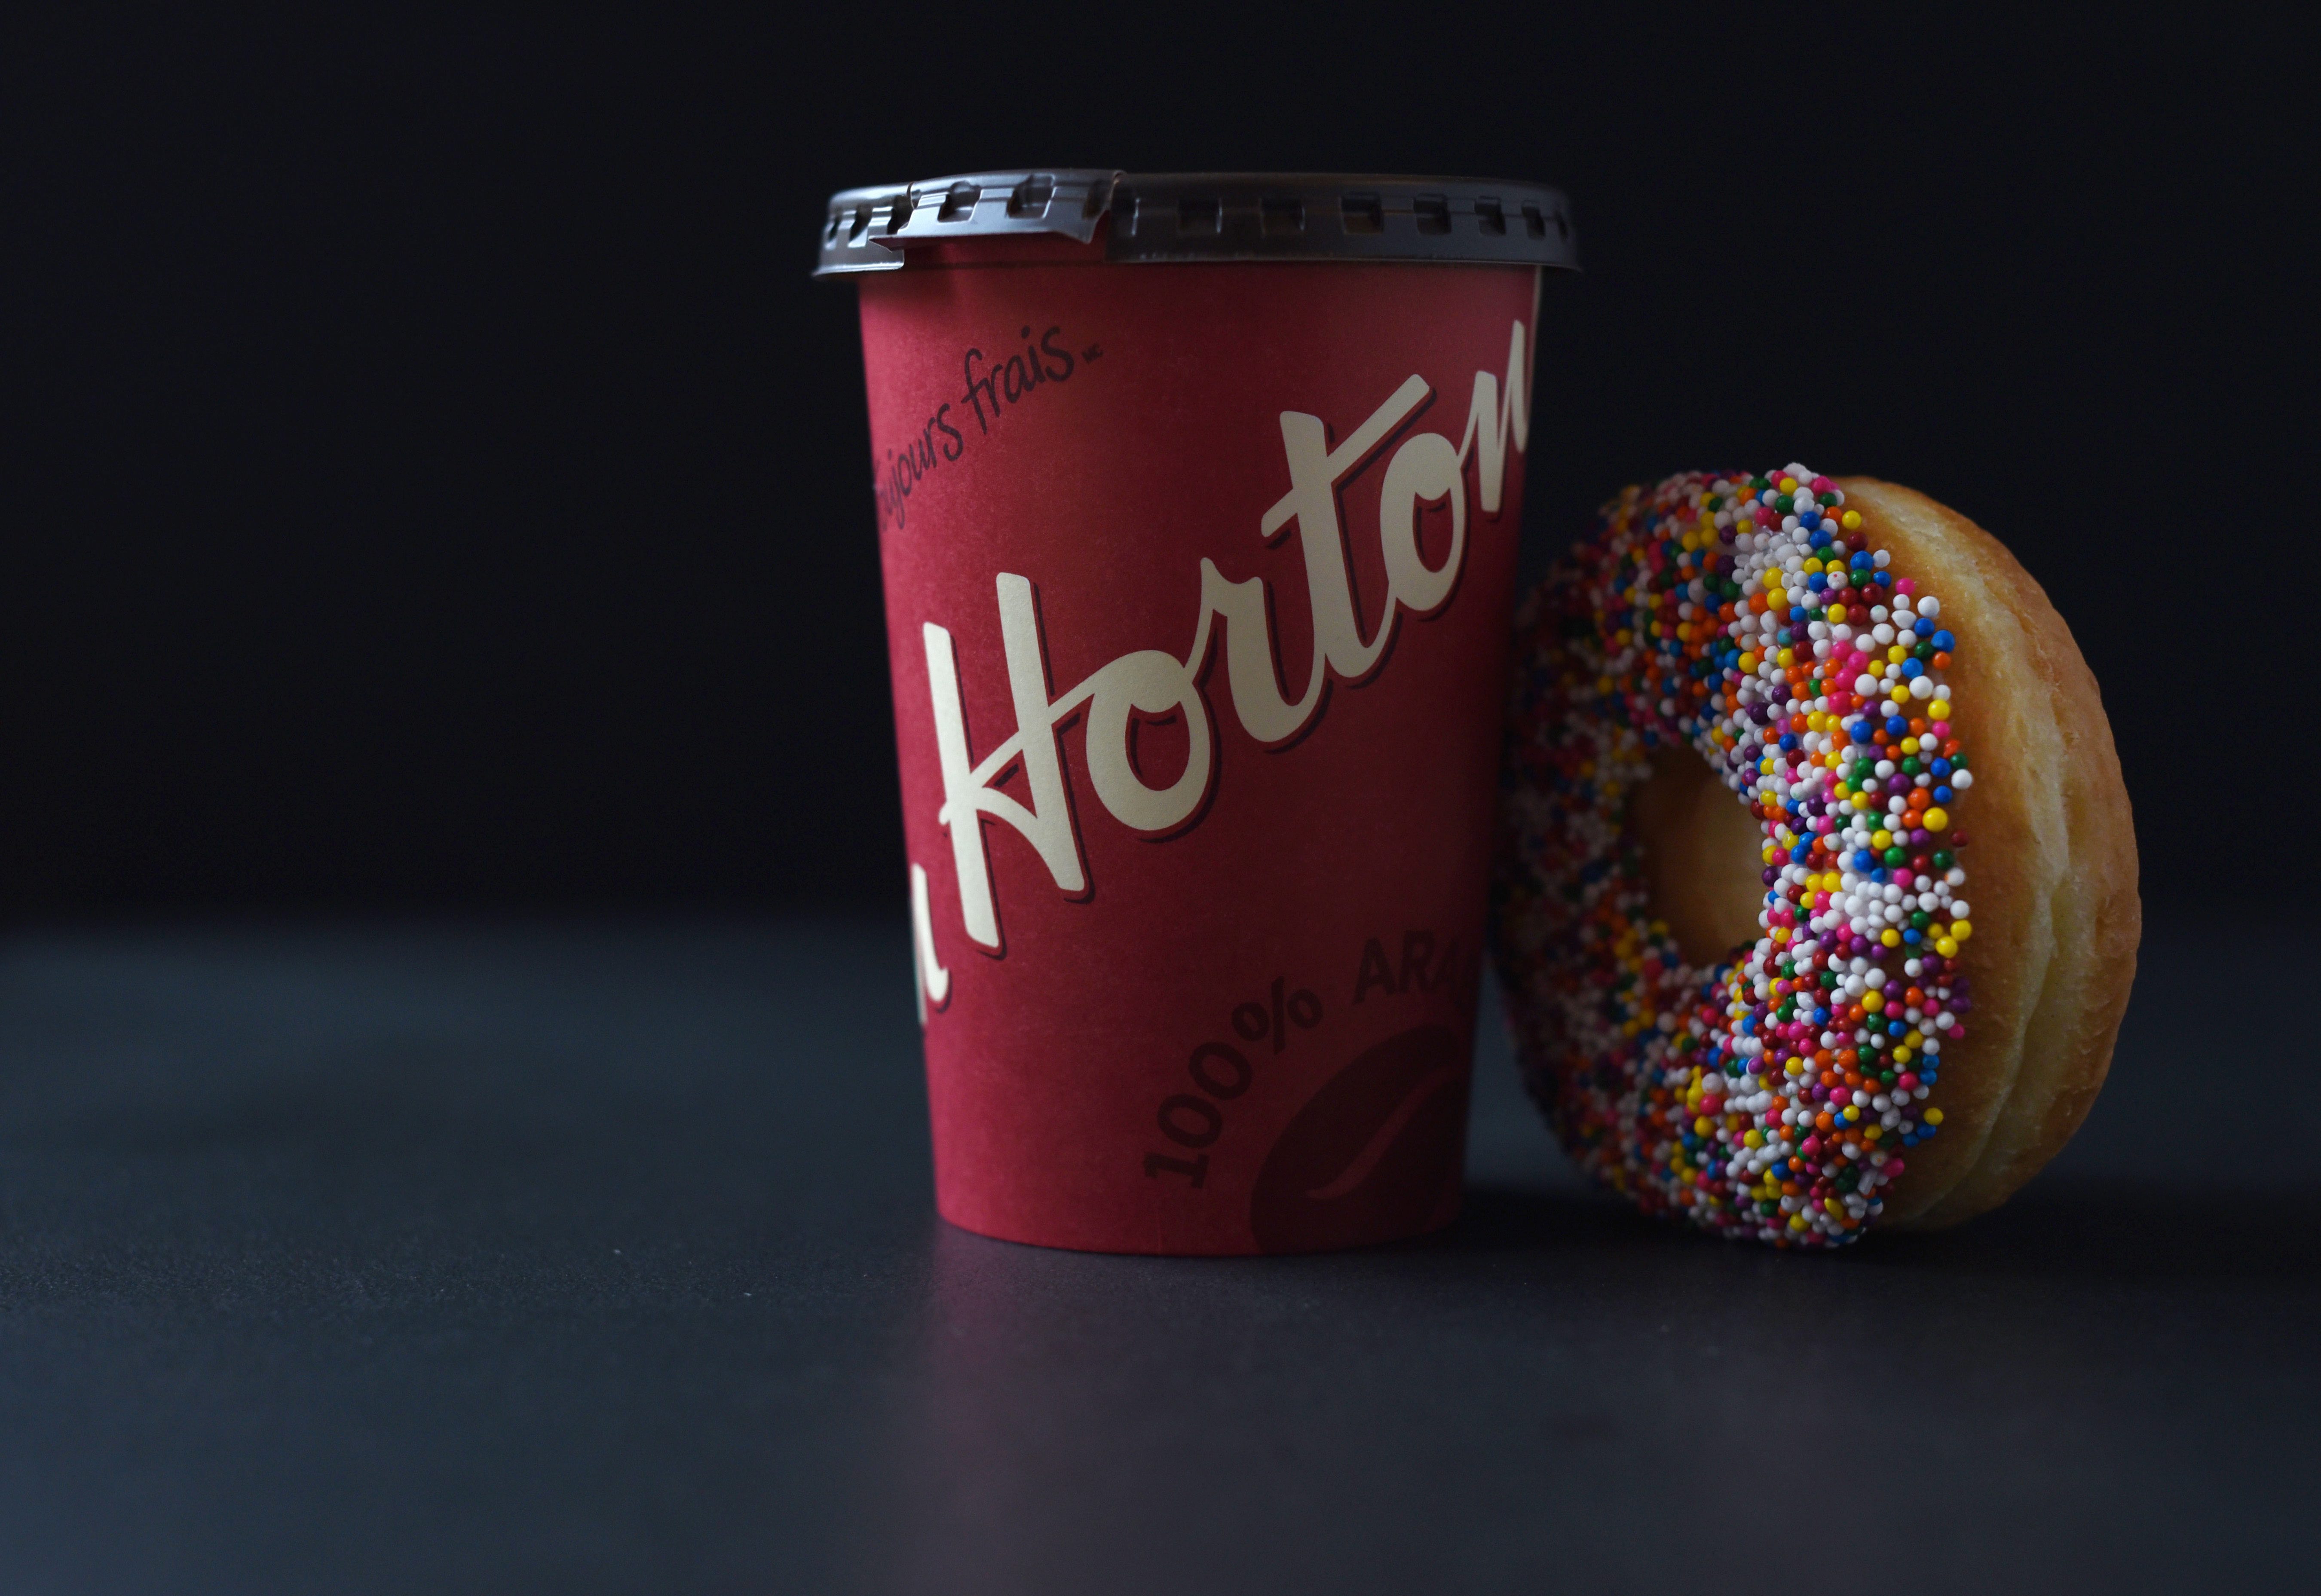 Đã đến lúc tận hưởng cảm giác thăng hoa với những tách cà phê và vòng quay may mắn miễn phí. Tải app Tim Hortons ngay để được tặng tách cà phê và doughnut miễn phí và nhận ngay cơ hội trúng giải thưởng hấp dẫn.